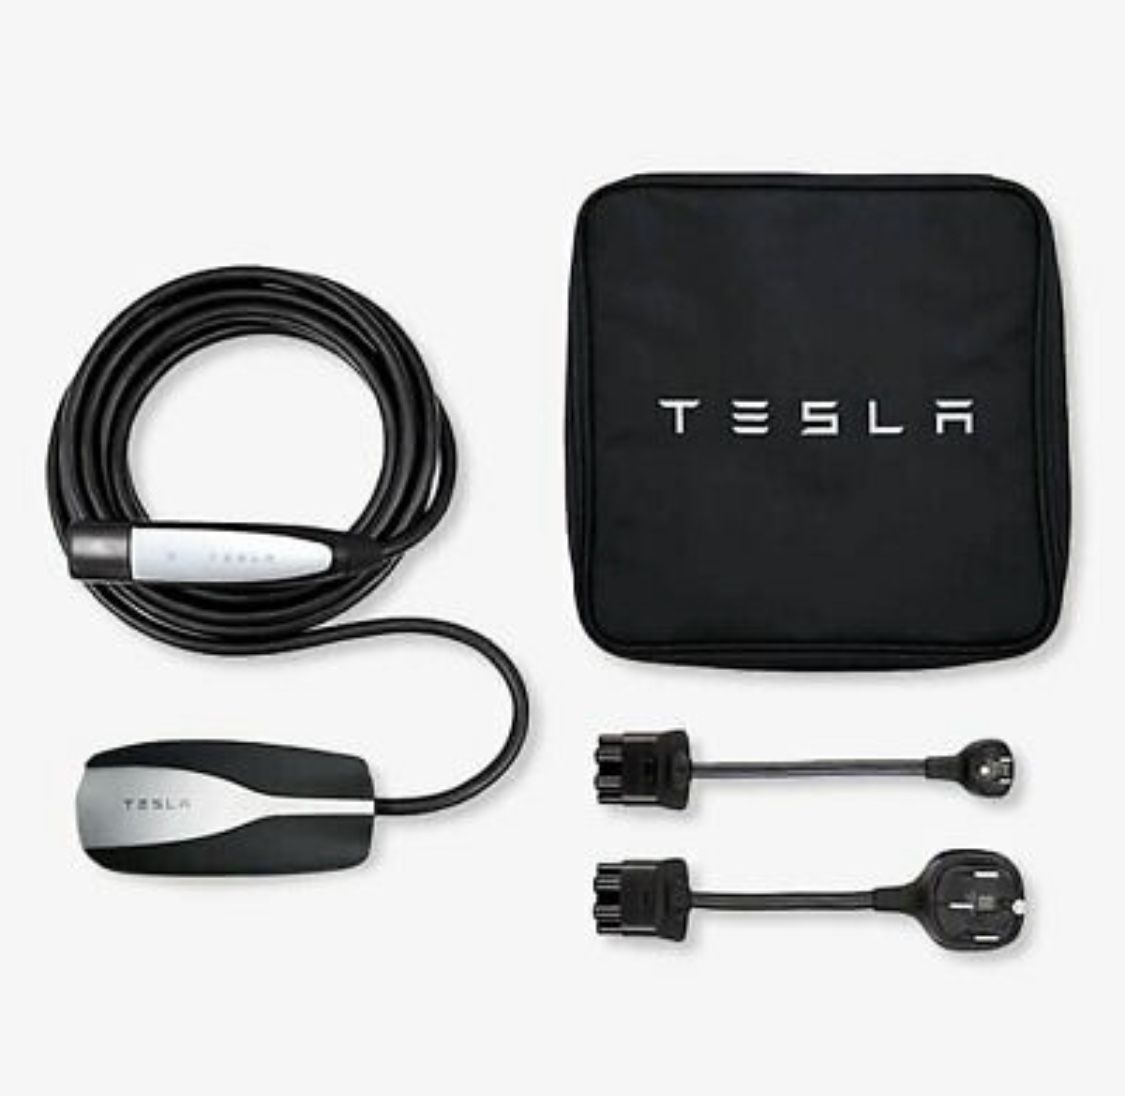 Tesla Mobile Charger - Save $200